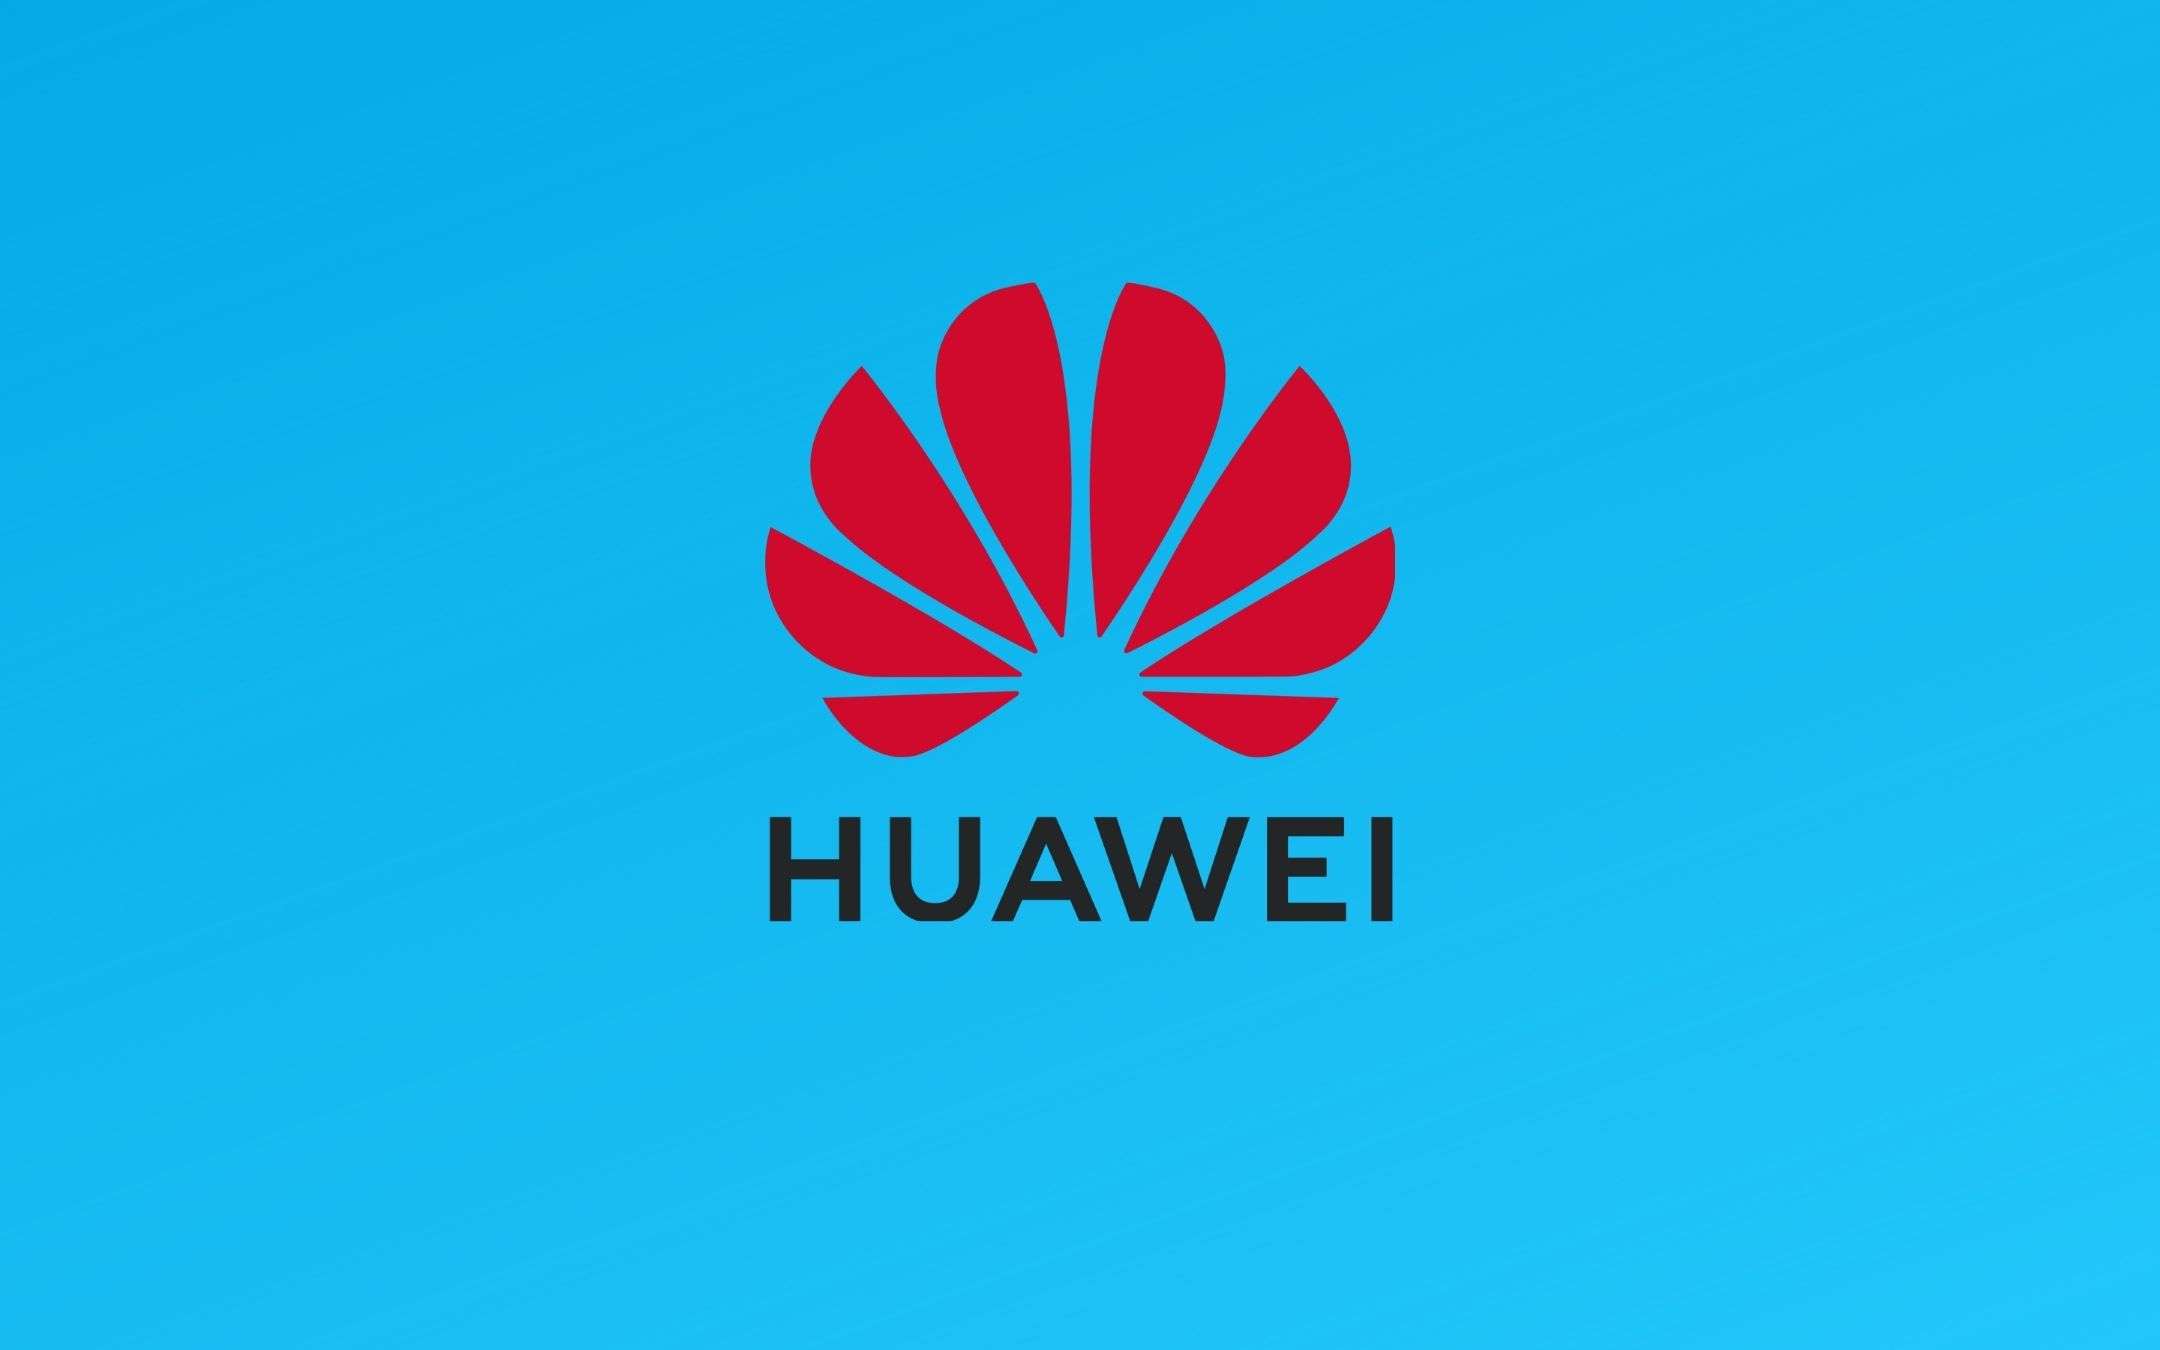 Huawei vuole investire nei mercati emergenti